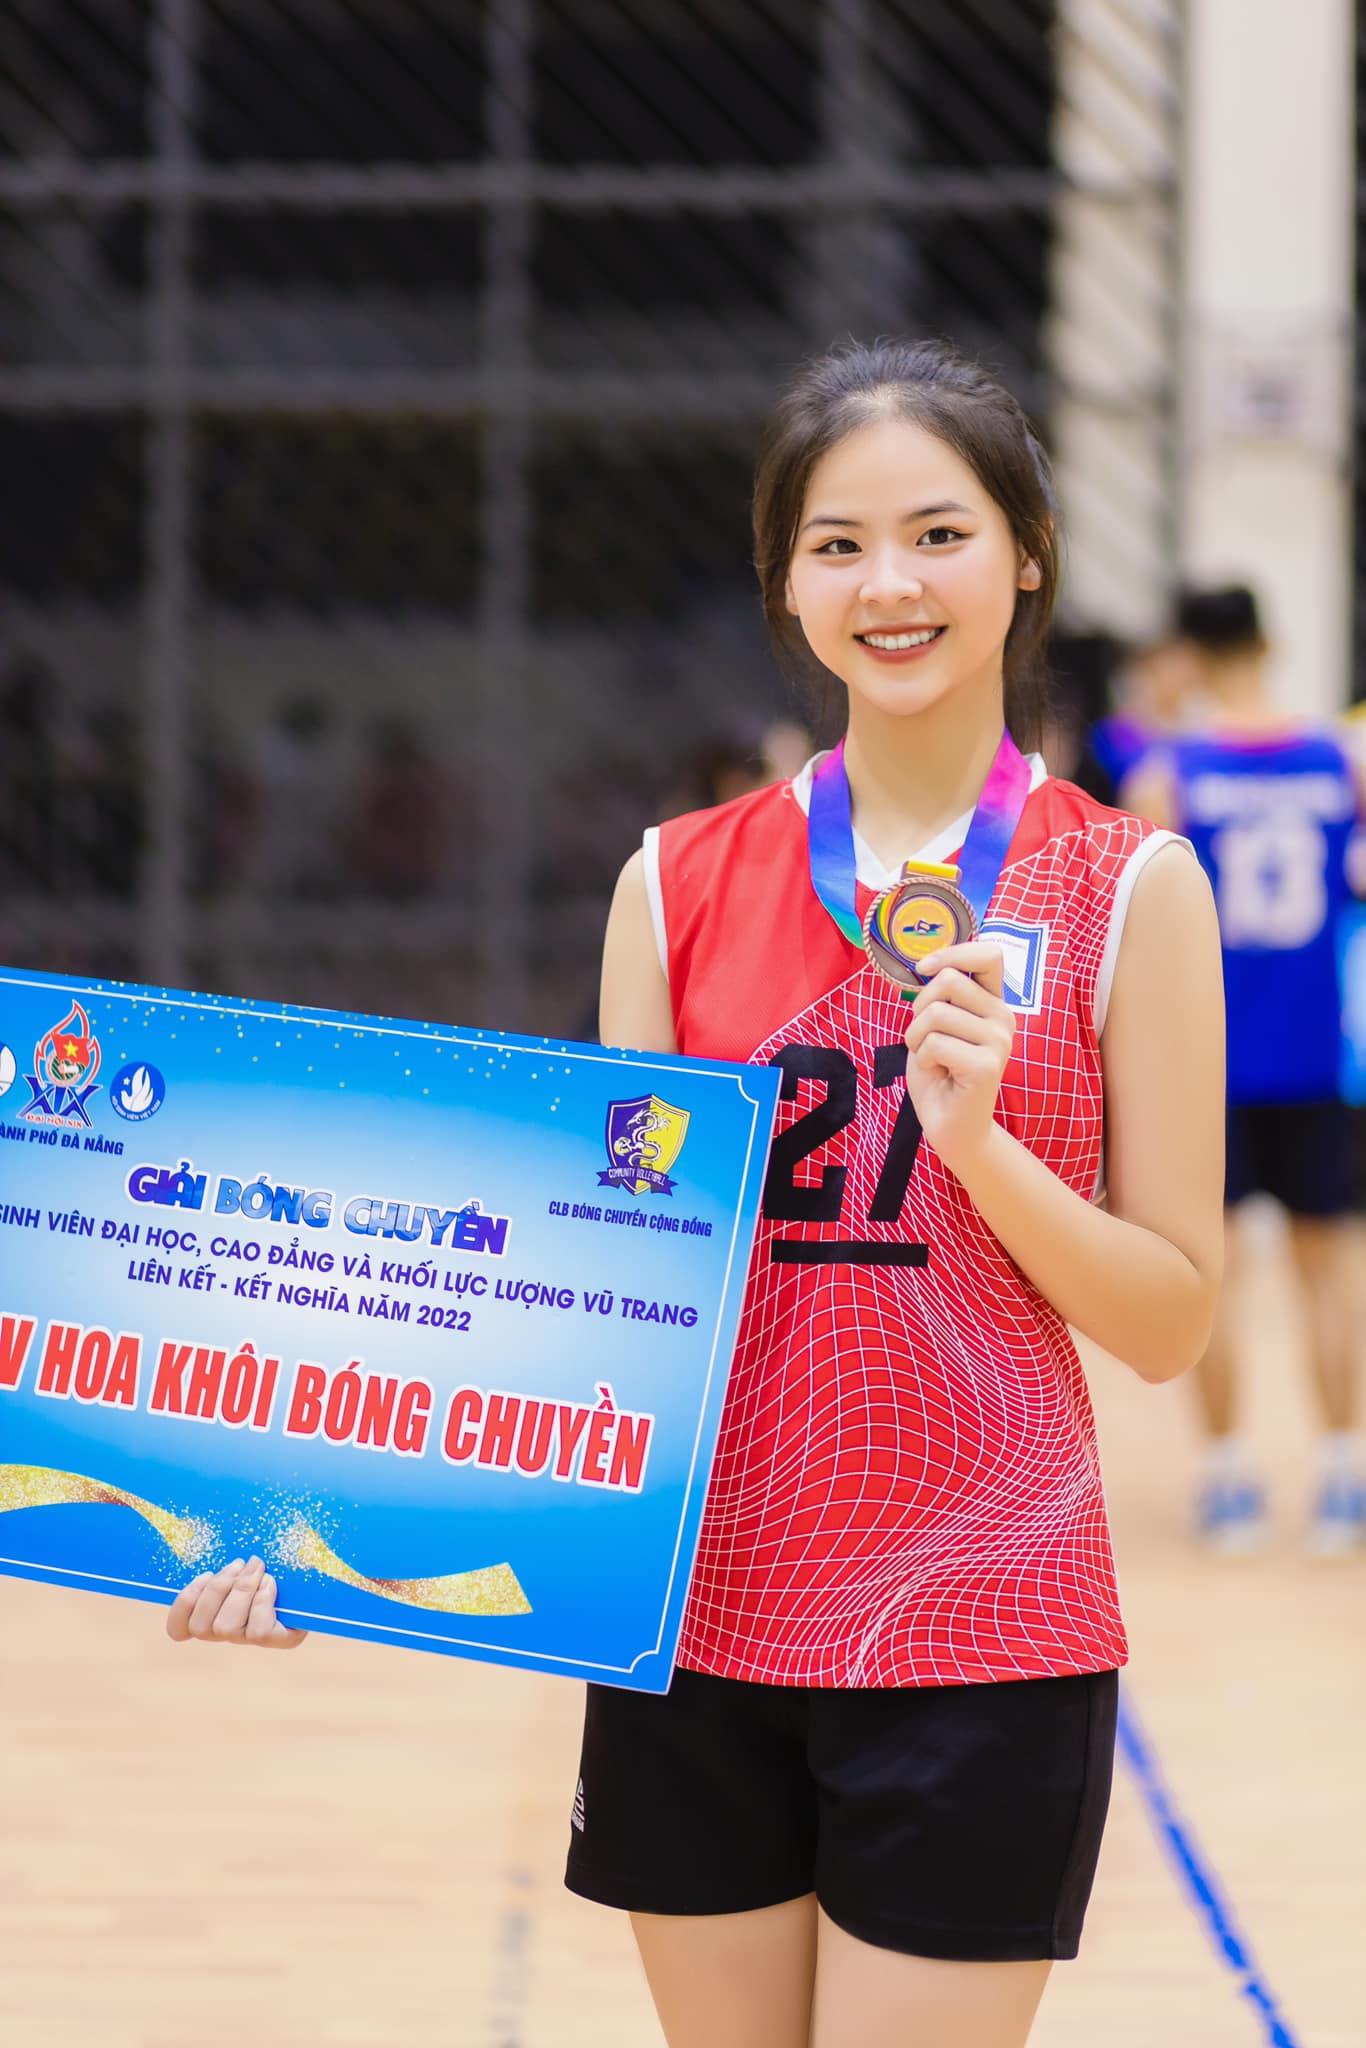 Nhan sắc xinh đẹp, lôi cuốn của thí sinh cao 1,7m vào thẳng Top 20 Miss World Vietnam 2023 - Ảnh 9.